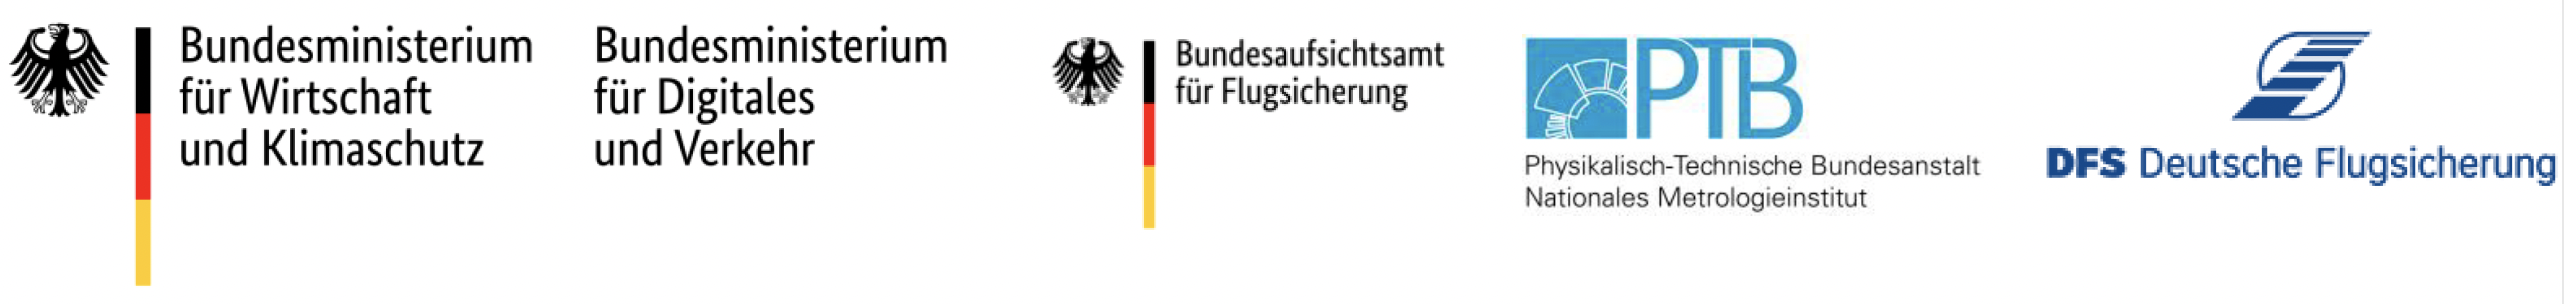 Logos des BMWK, BMDV, Bundesaufsichtsamt für Flugsicherung, PTB, DFS